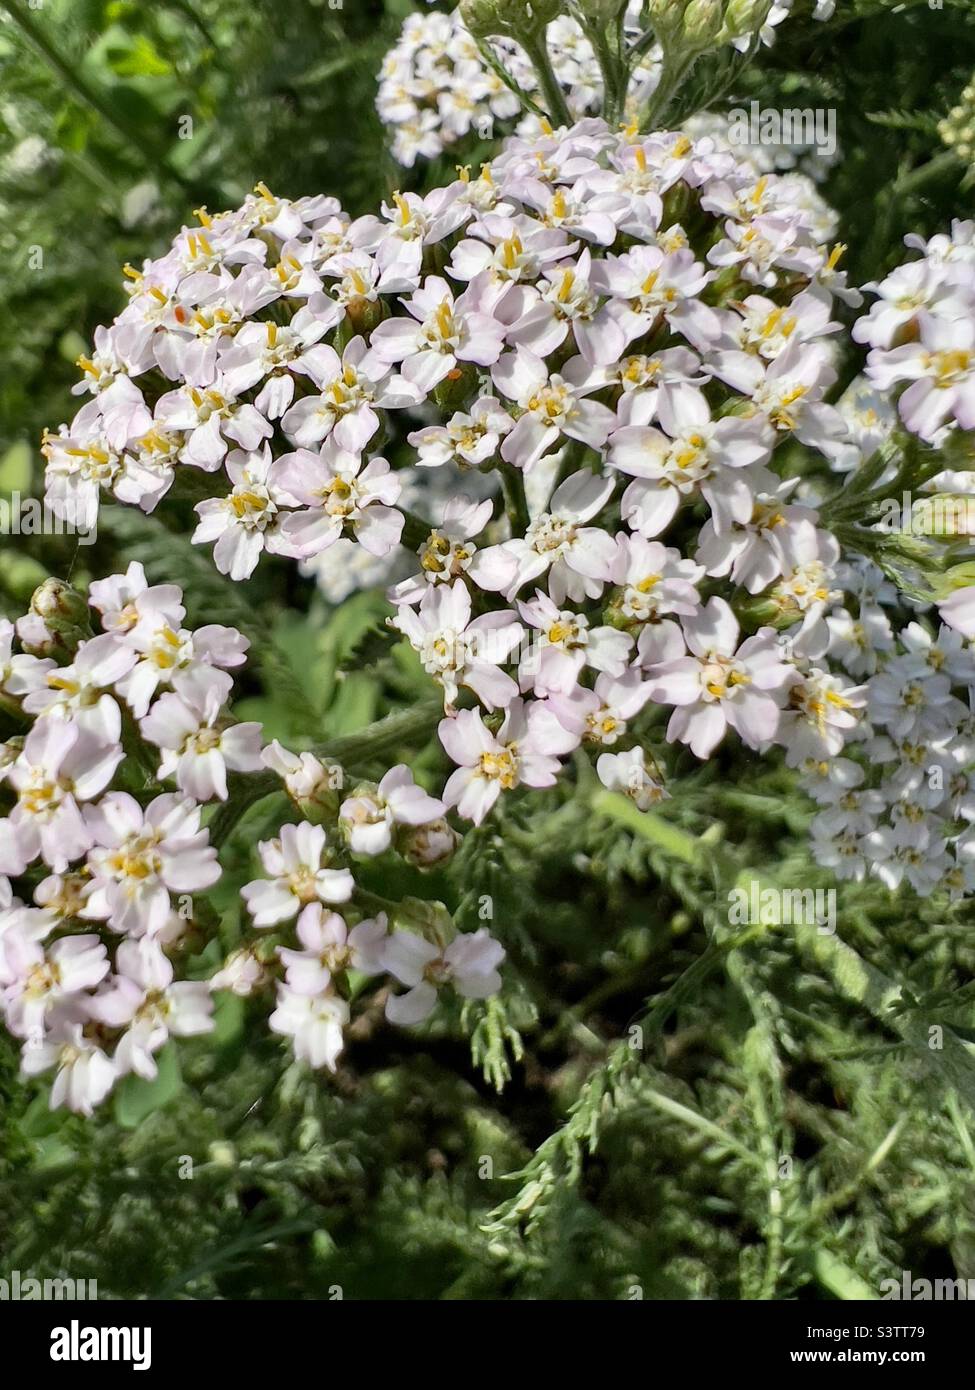 Weiße kleine Blüten im Gras. Grüner natürlicher Hintergrund. Sommervegetation ist charmant und angenehm für das Auge. san-Strahlen beleuchten blühende Pflanzen Stockfoto